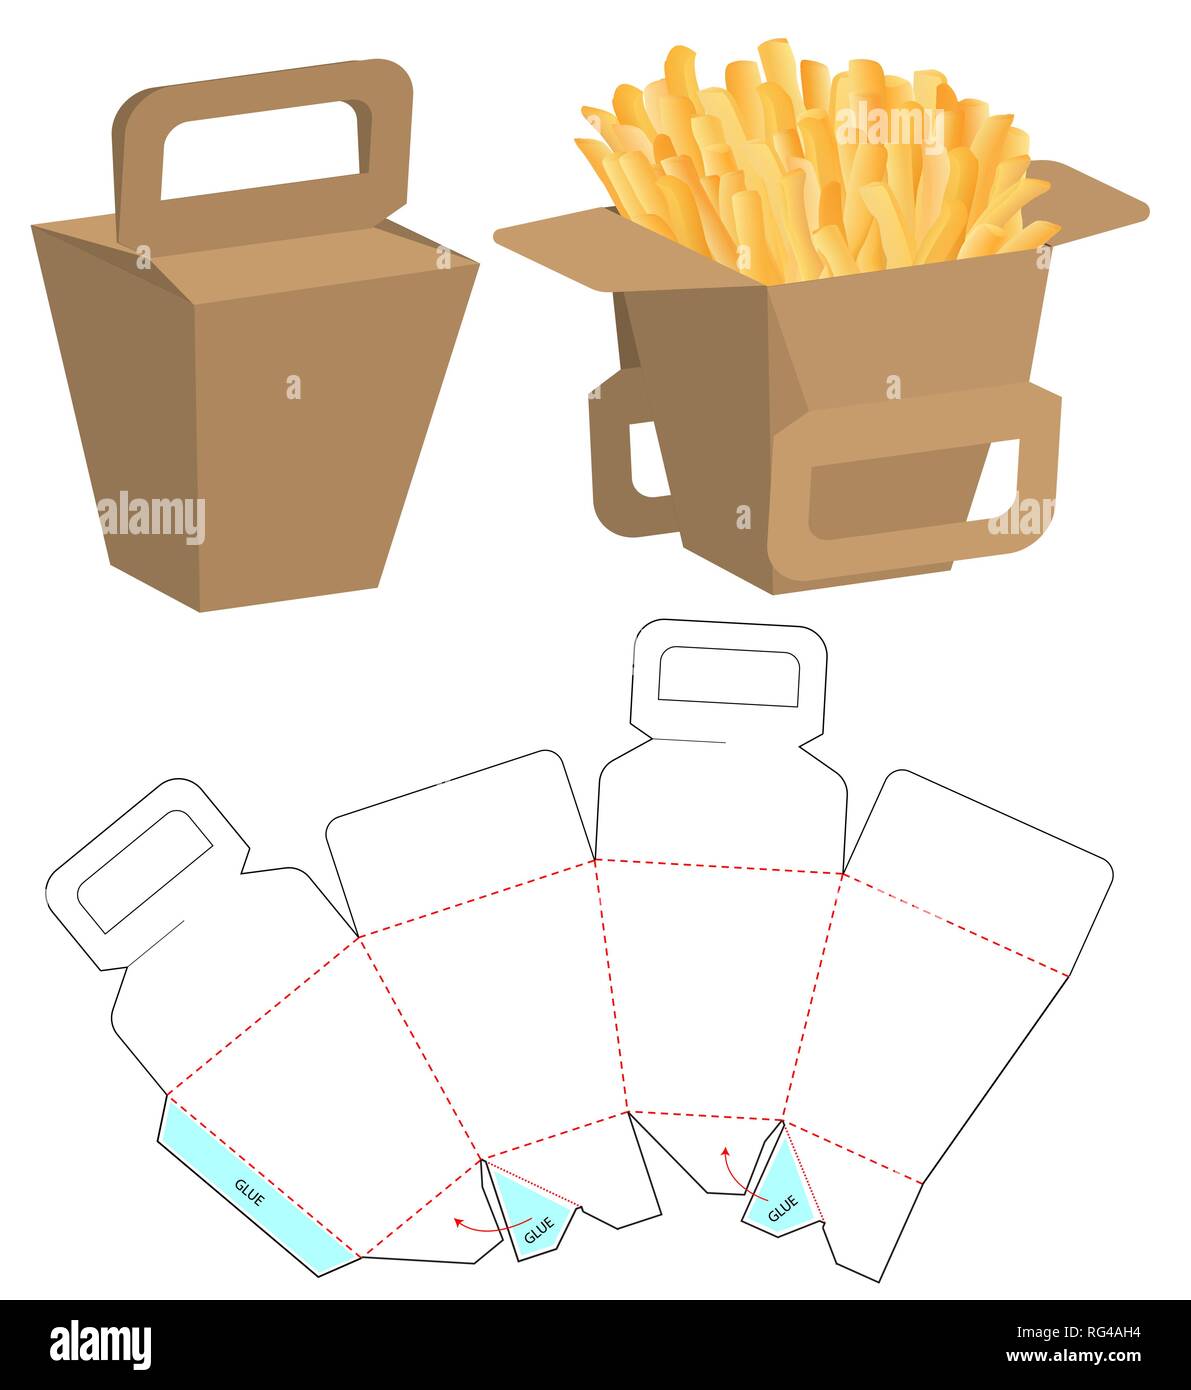 Fries Box Packaging Mockup  Packaging mockup, Box packaging,  packaging